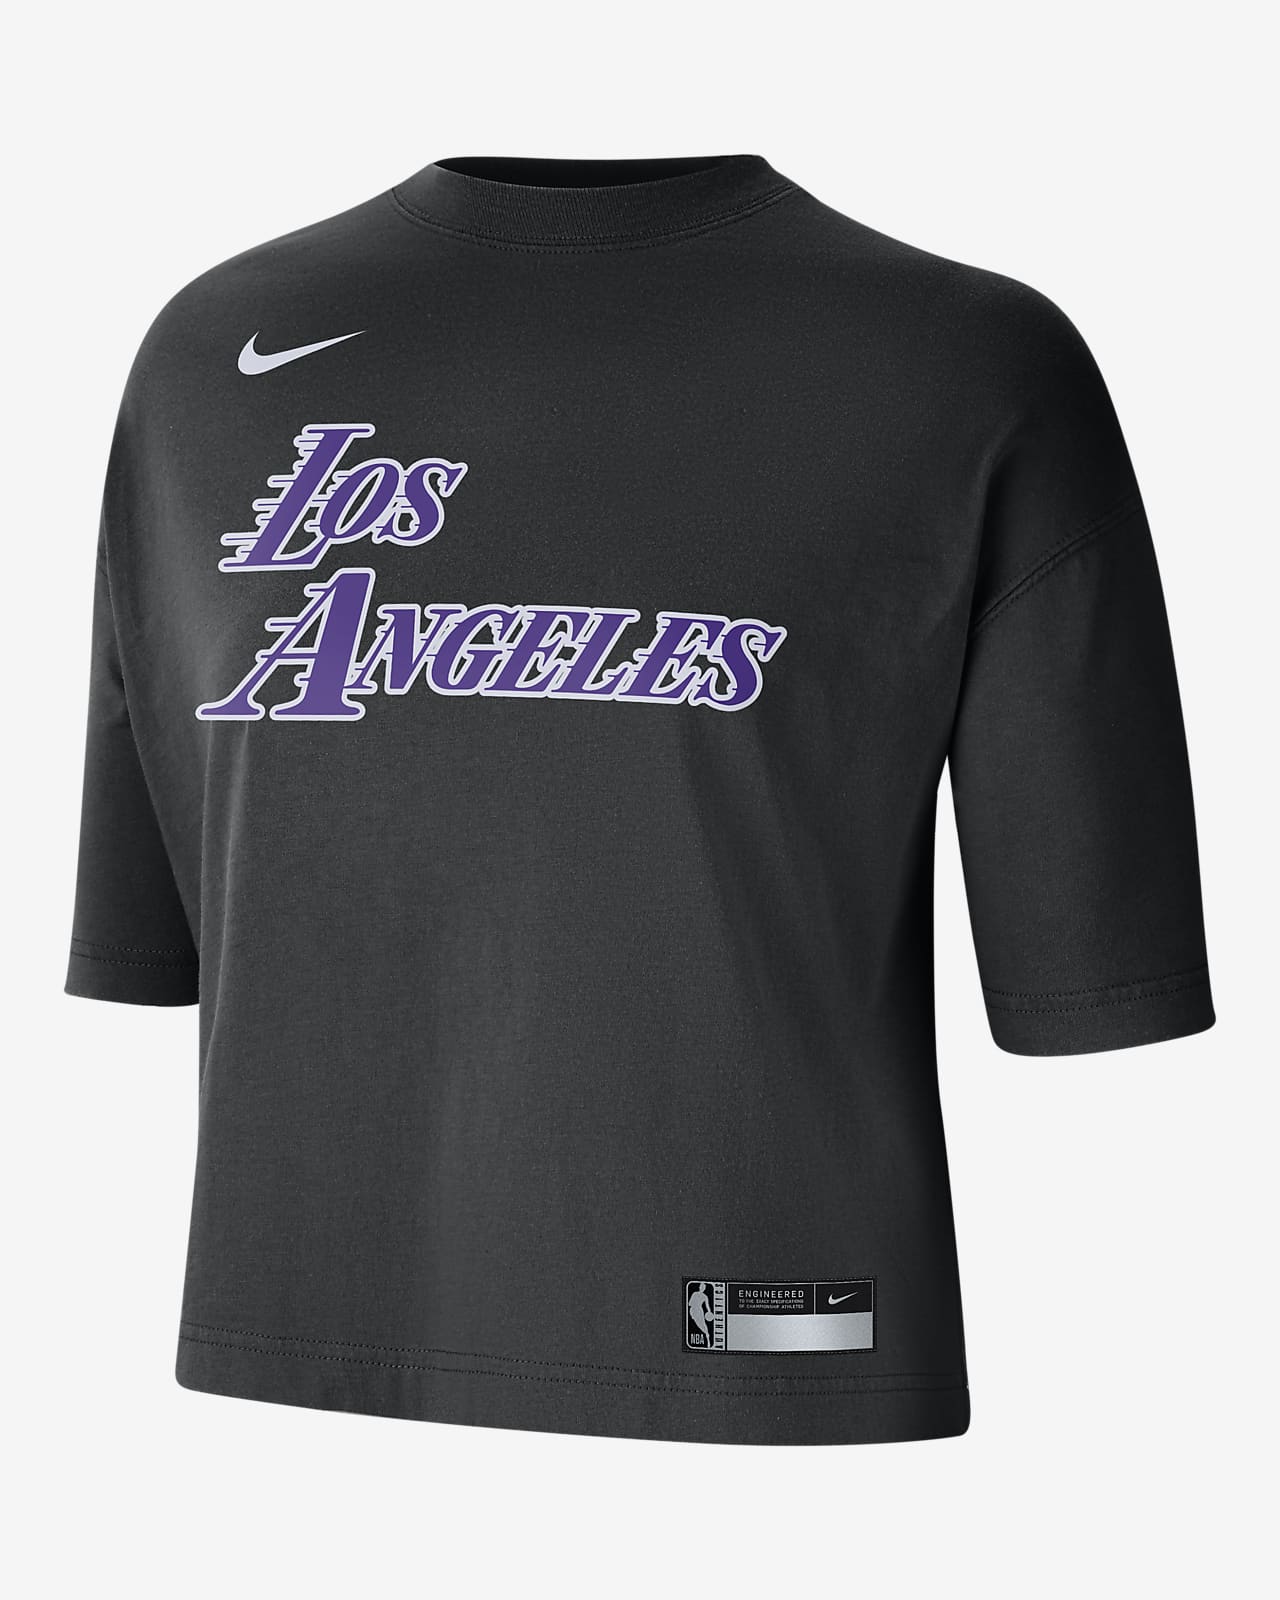 Nike Basketball Los Angeles Lakers Dri-FIT practice tshirt in purple